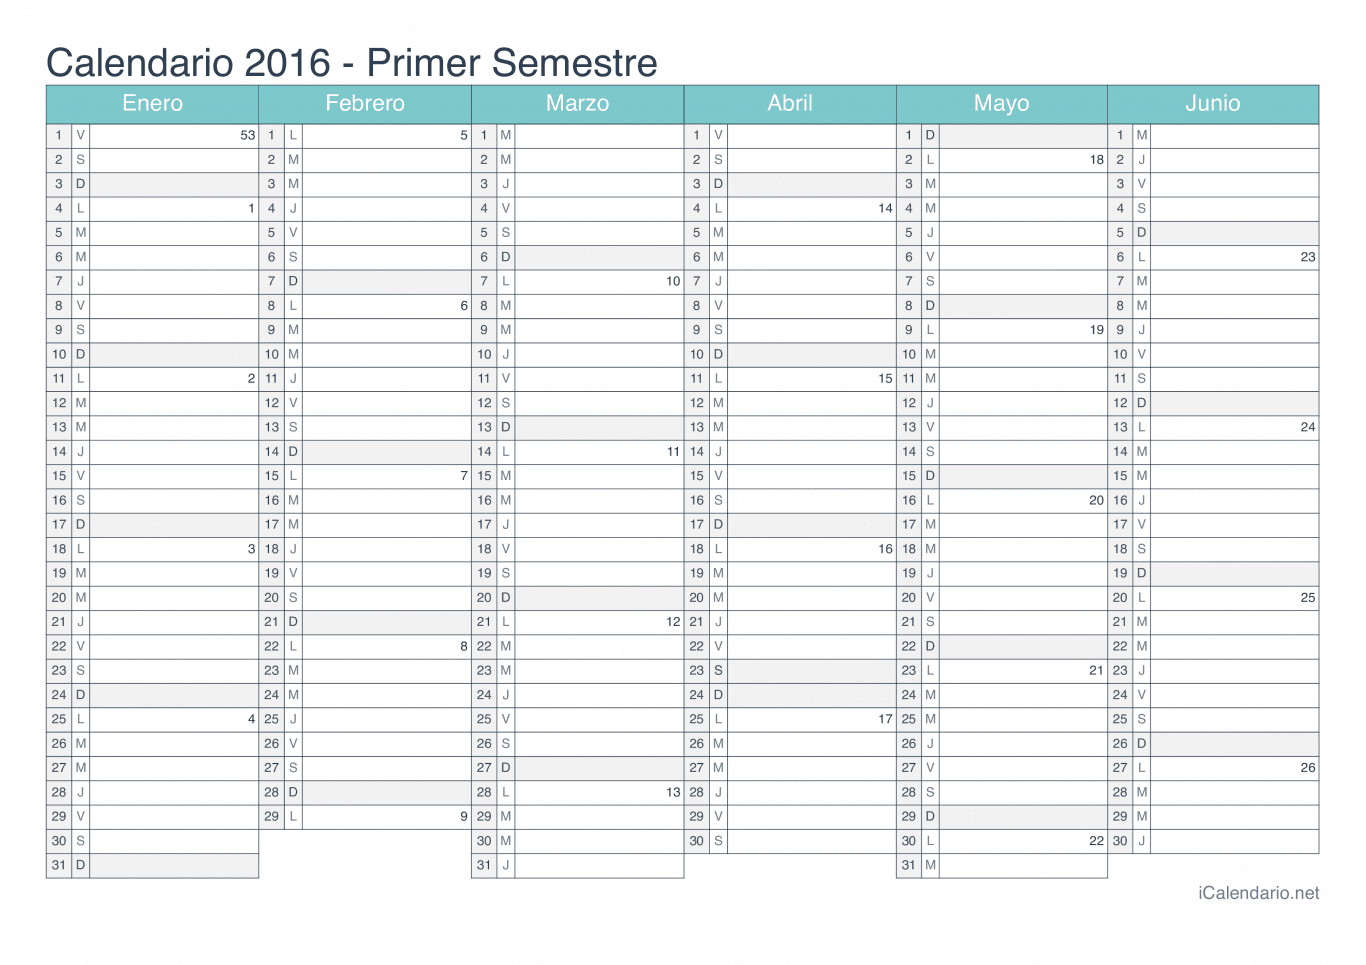 Calendario por semestre com números da semana 2016 - Turquesa